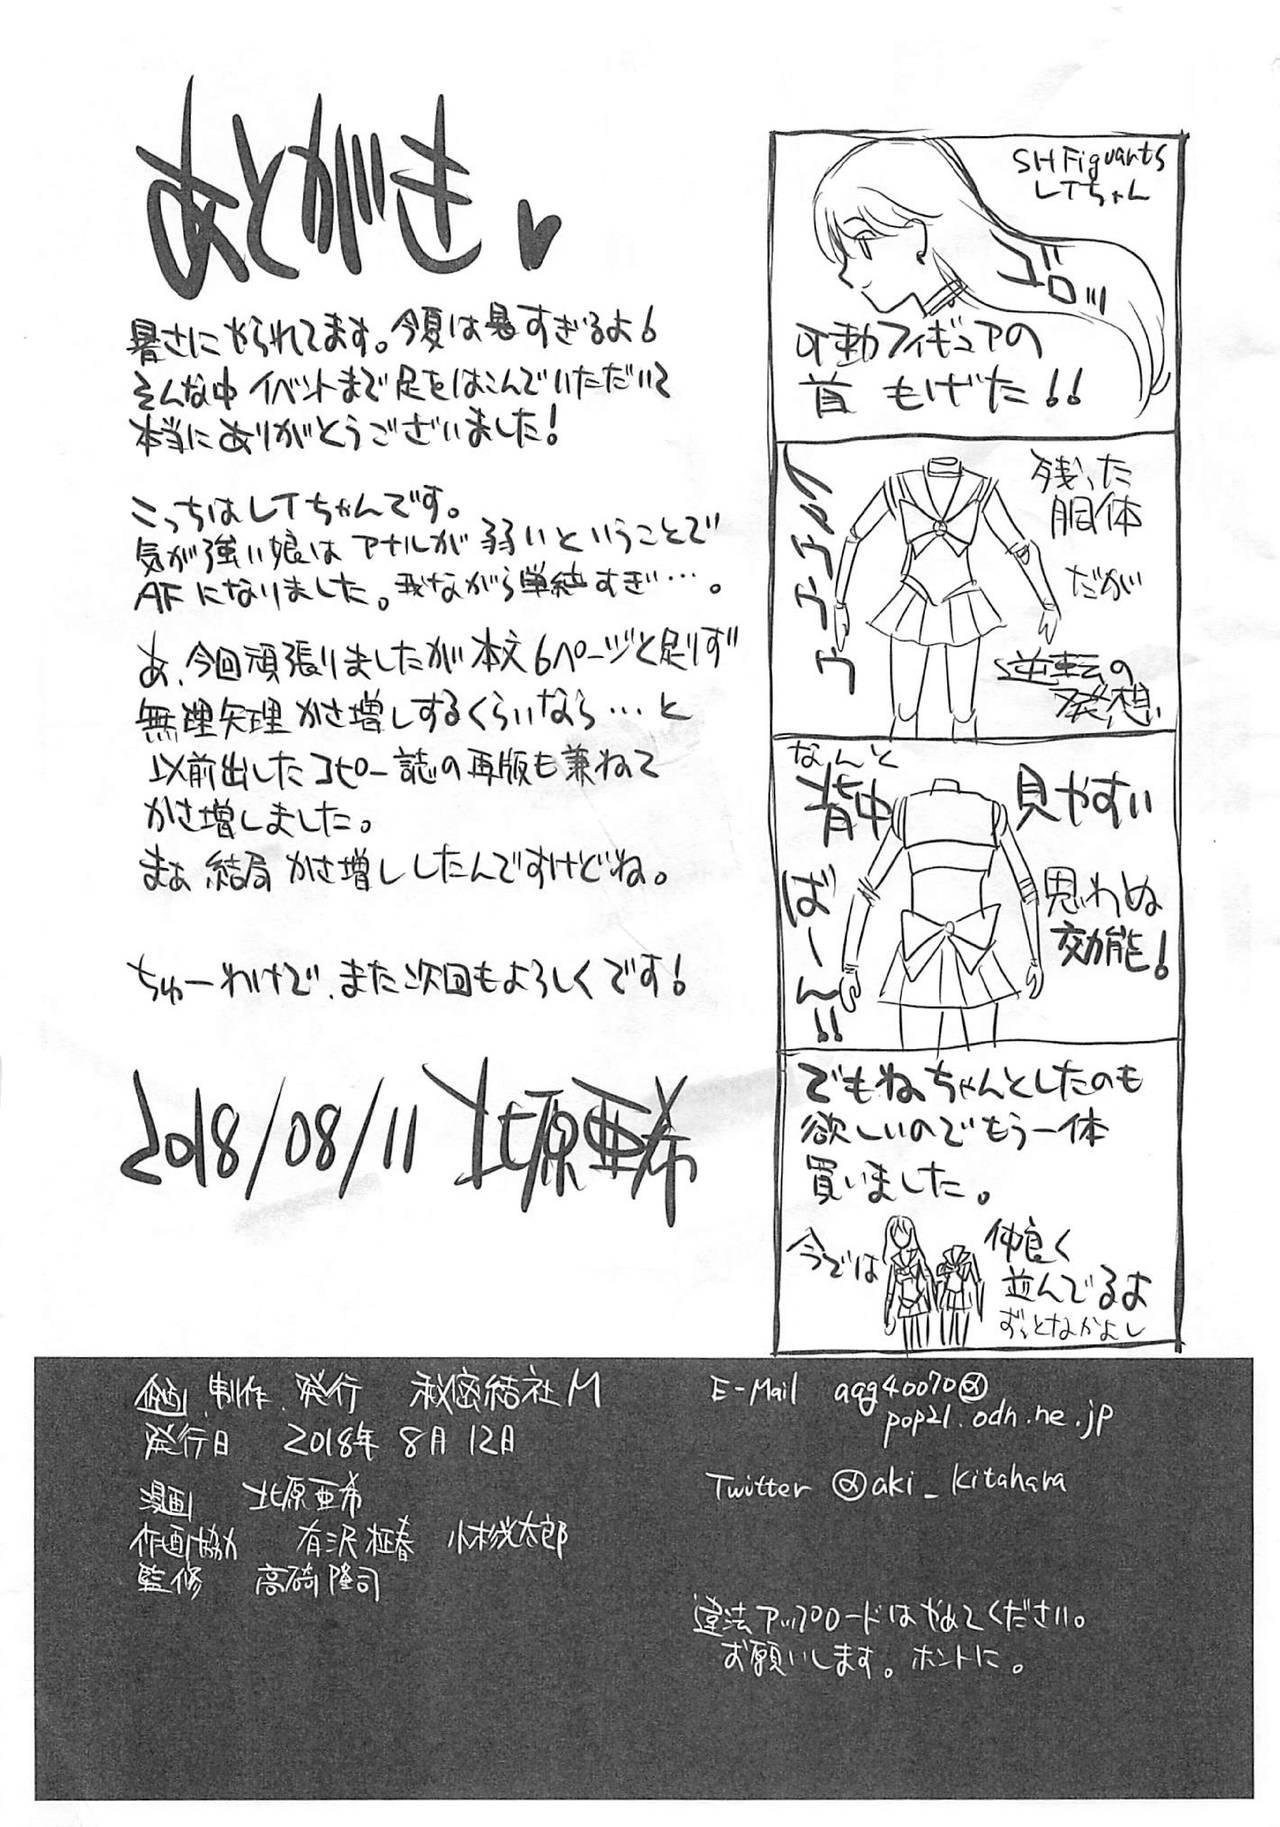 Publico Natsu no maazu toppatsu kopii-shi - Sailor moon | bishoujo senshi sailor moon France - Page 17